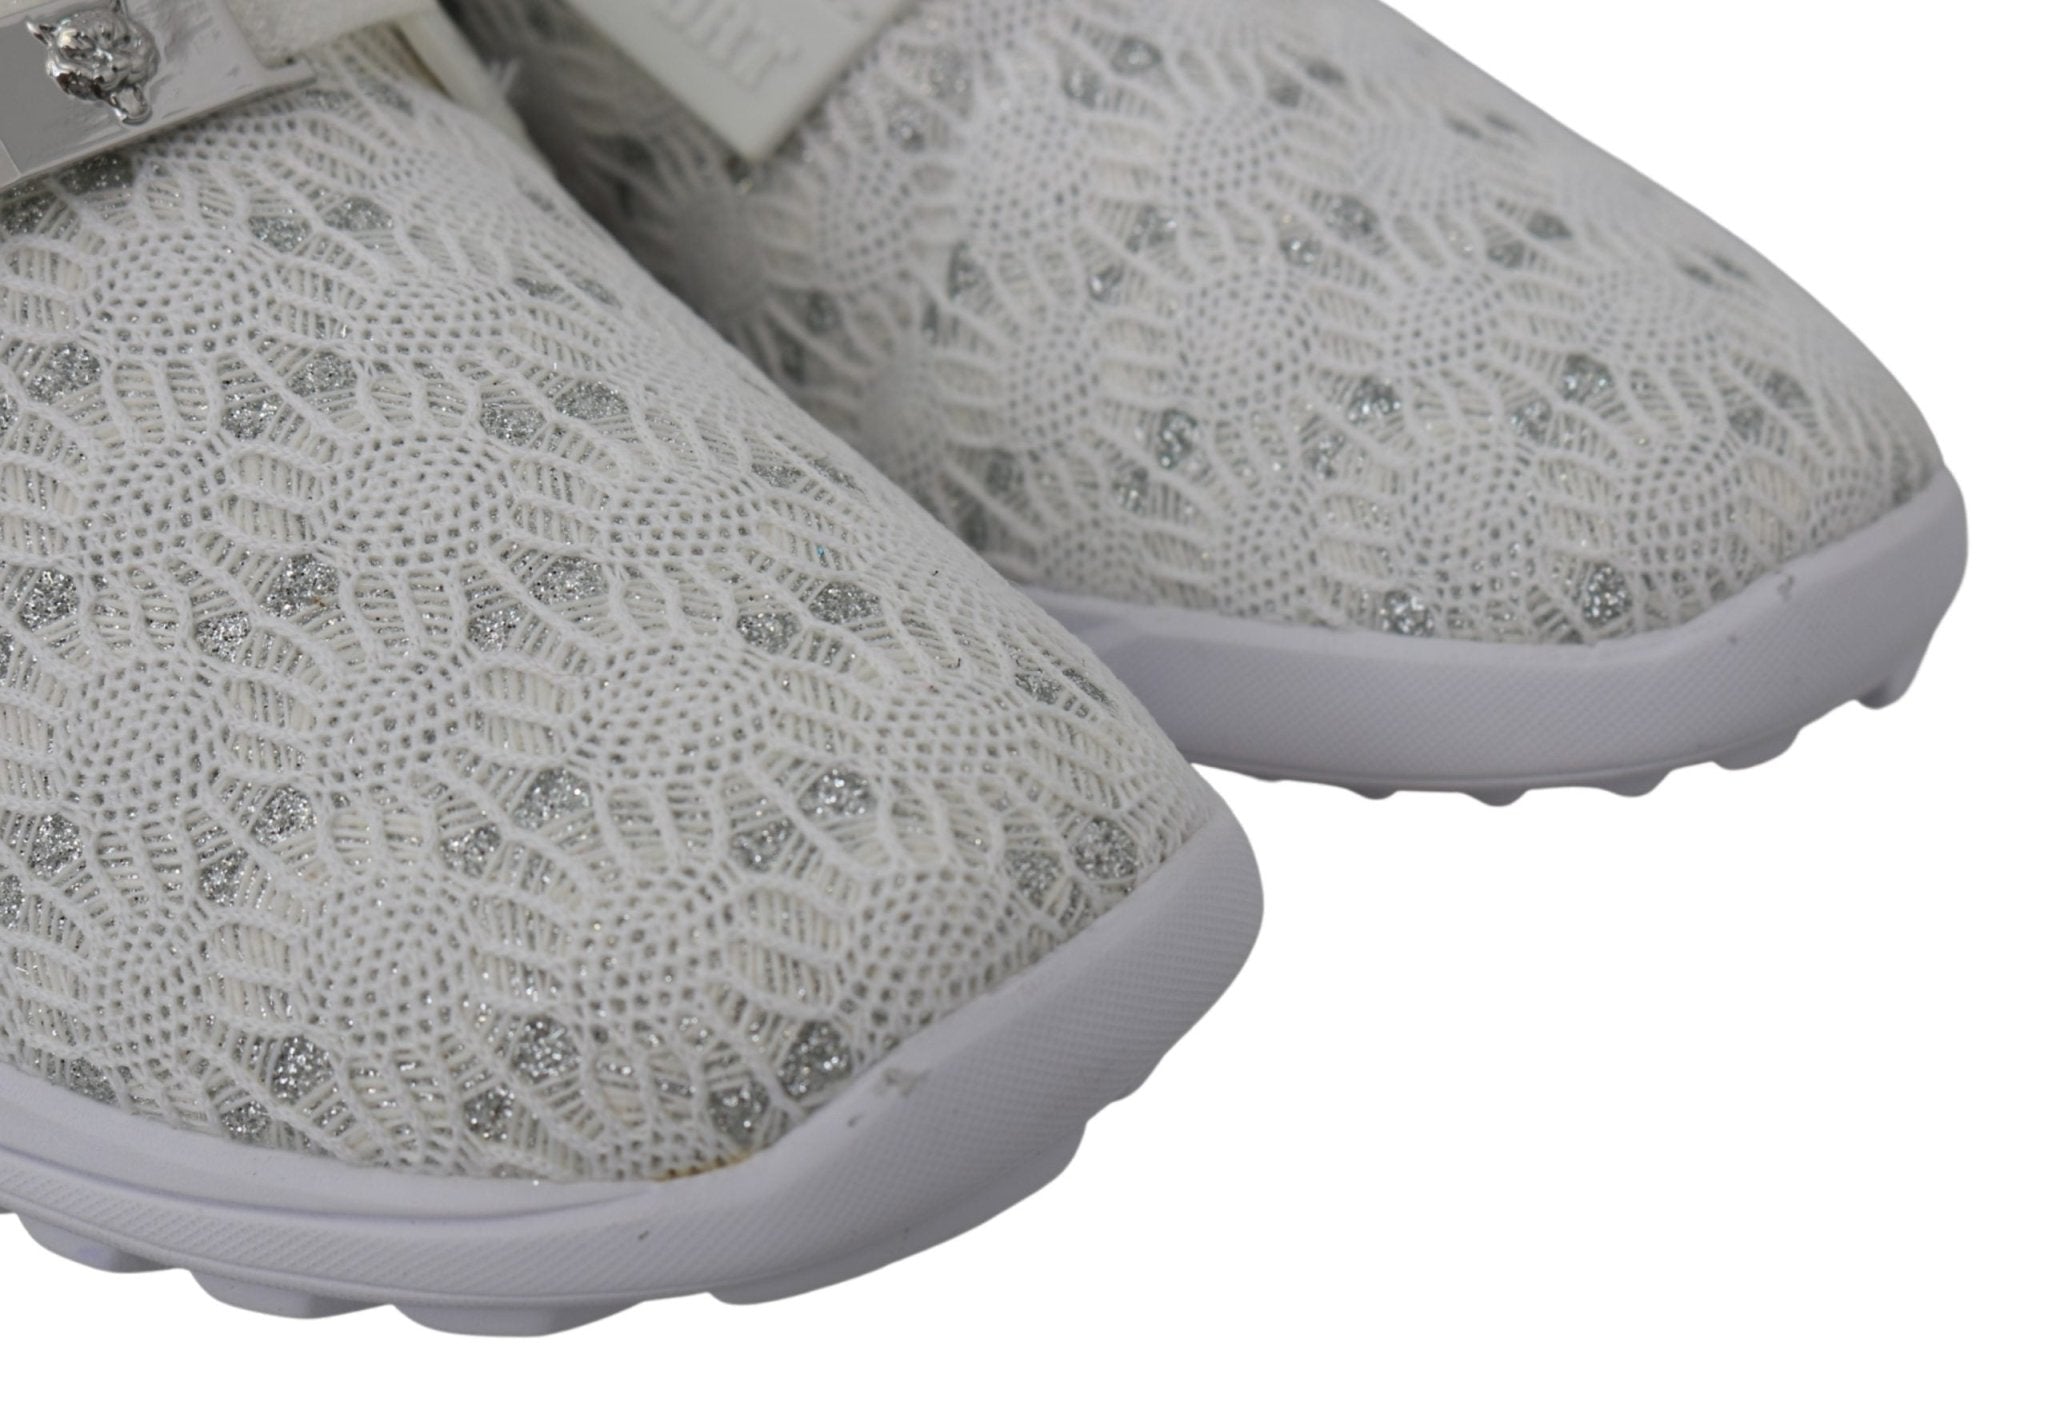 Plein Sport White Polyester Runner Beth Sneakers Shoes - Fizigo